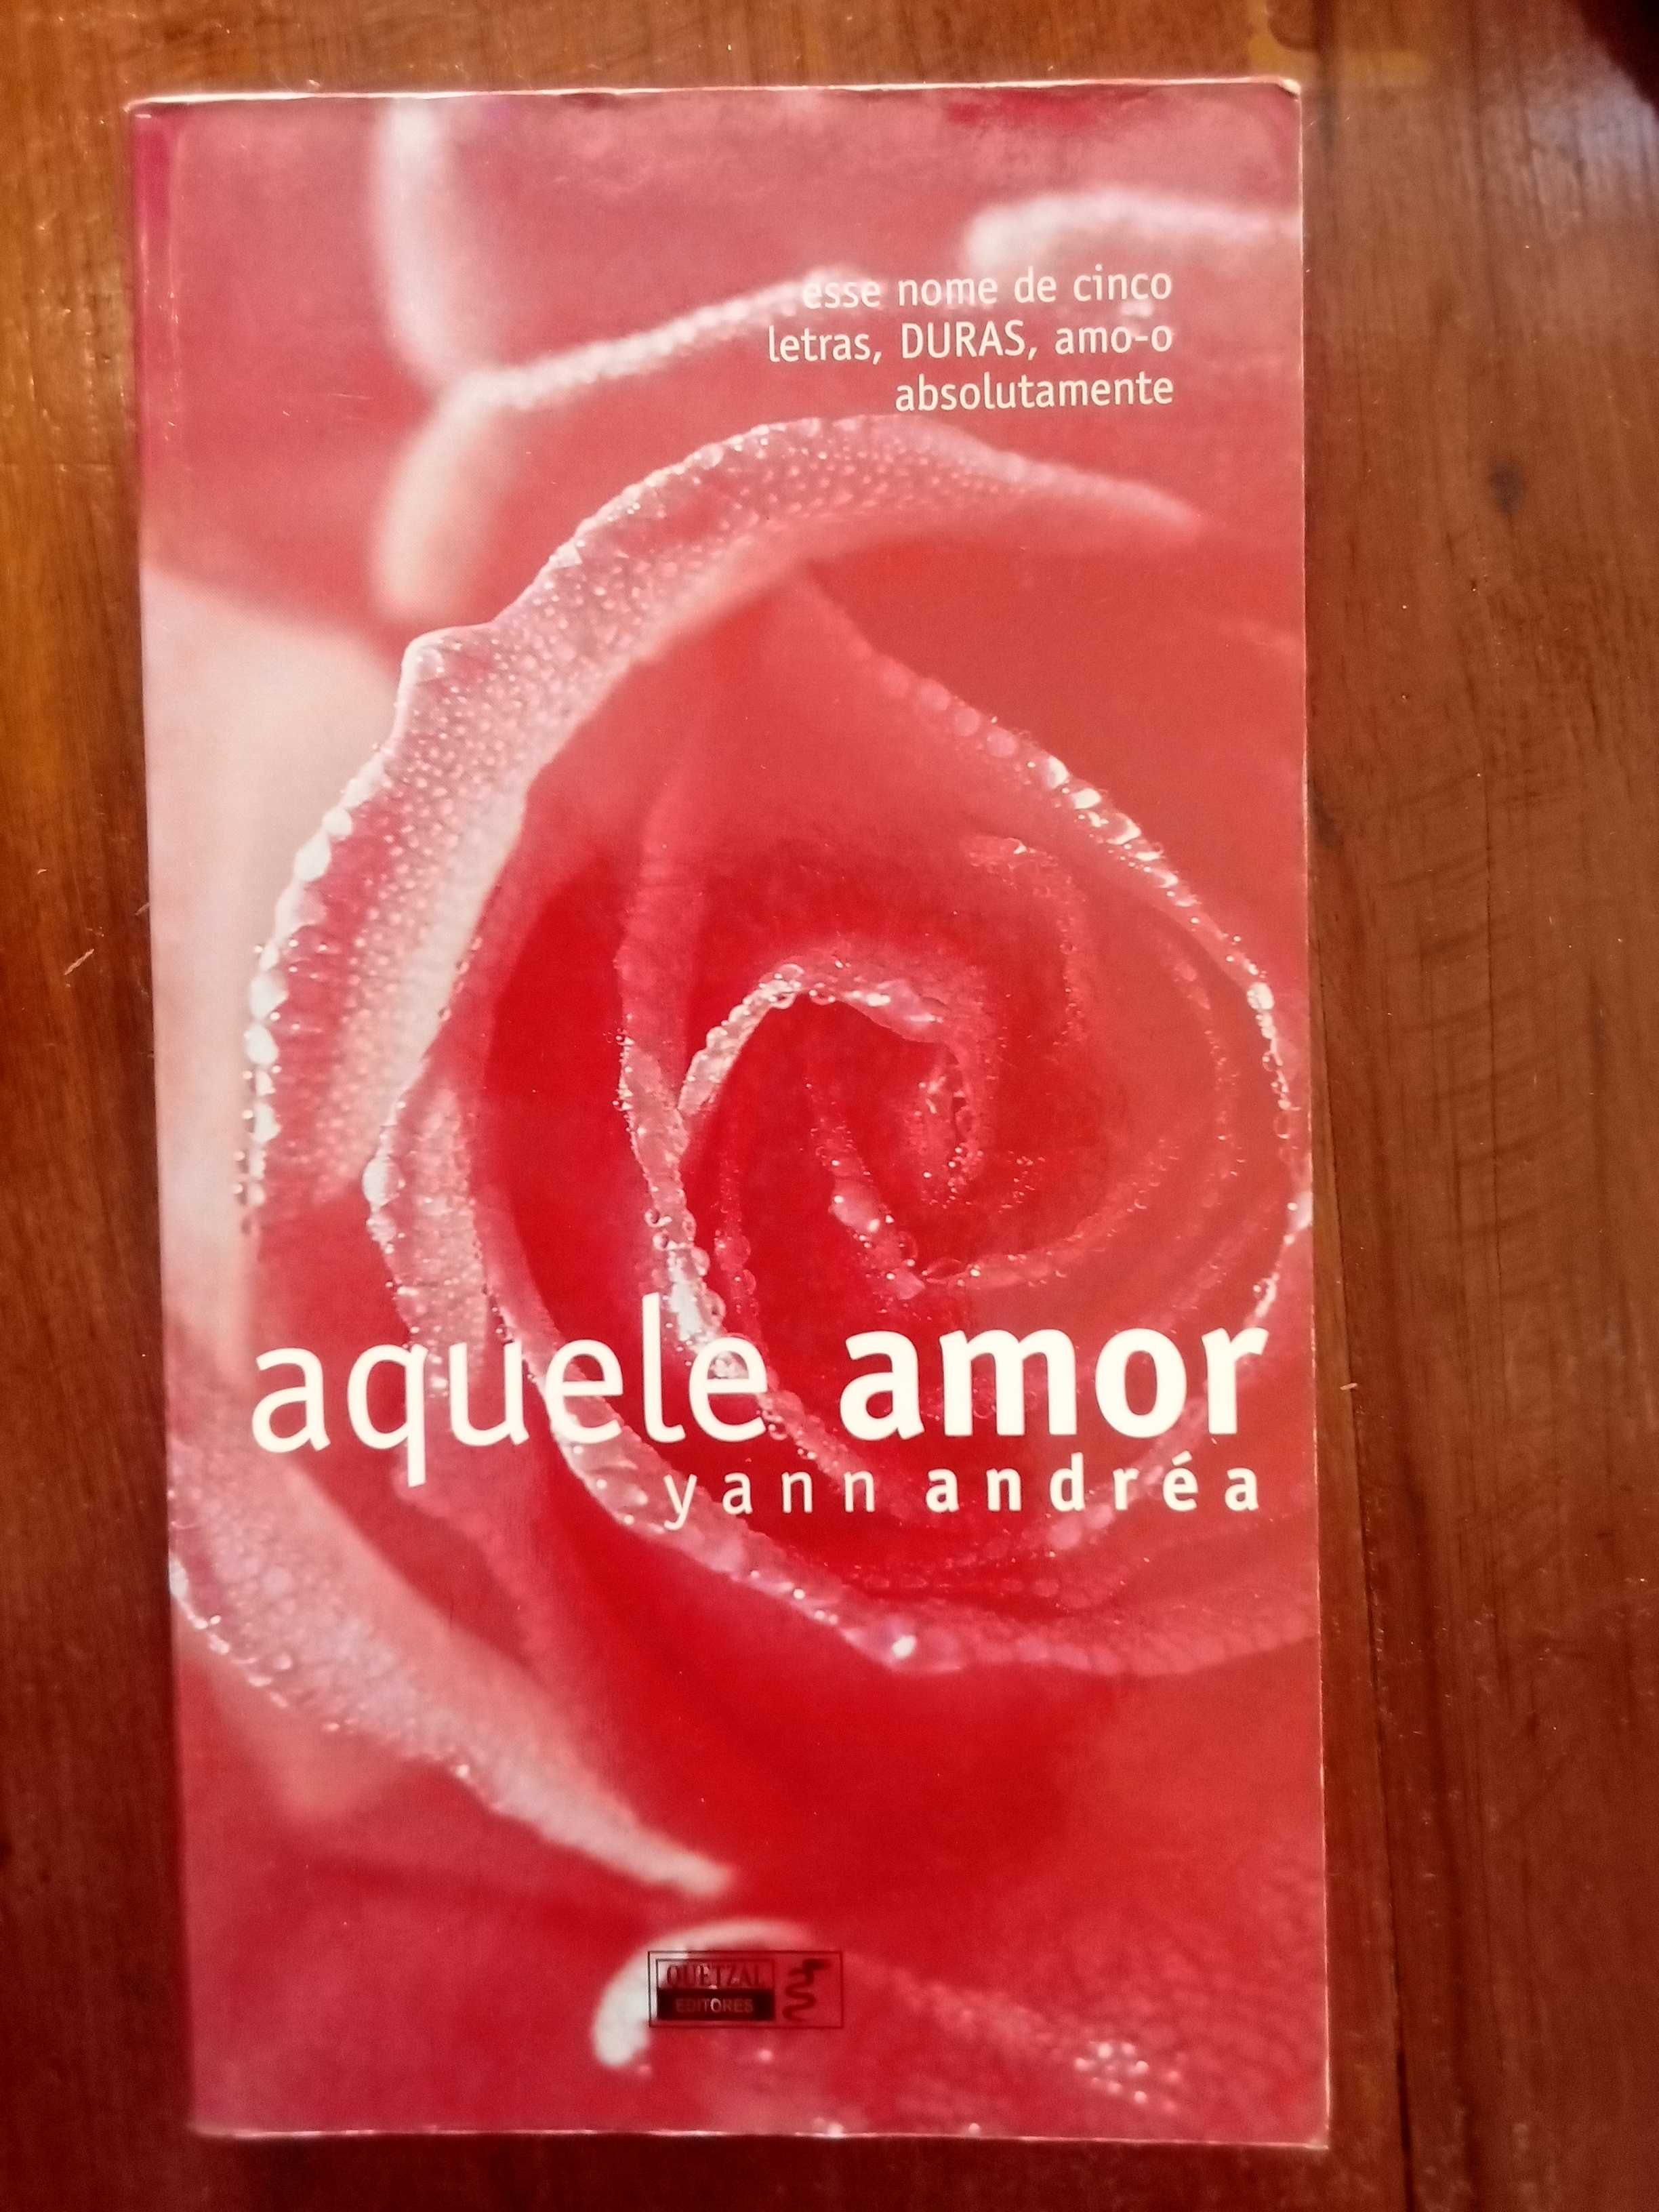 Yann Andréa - Aquele amor